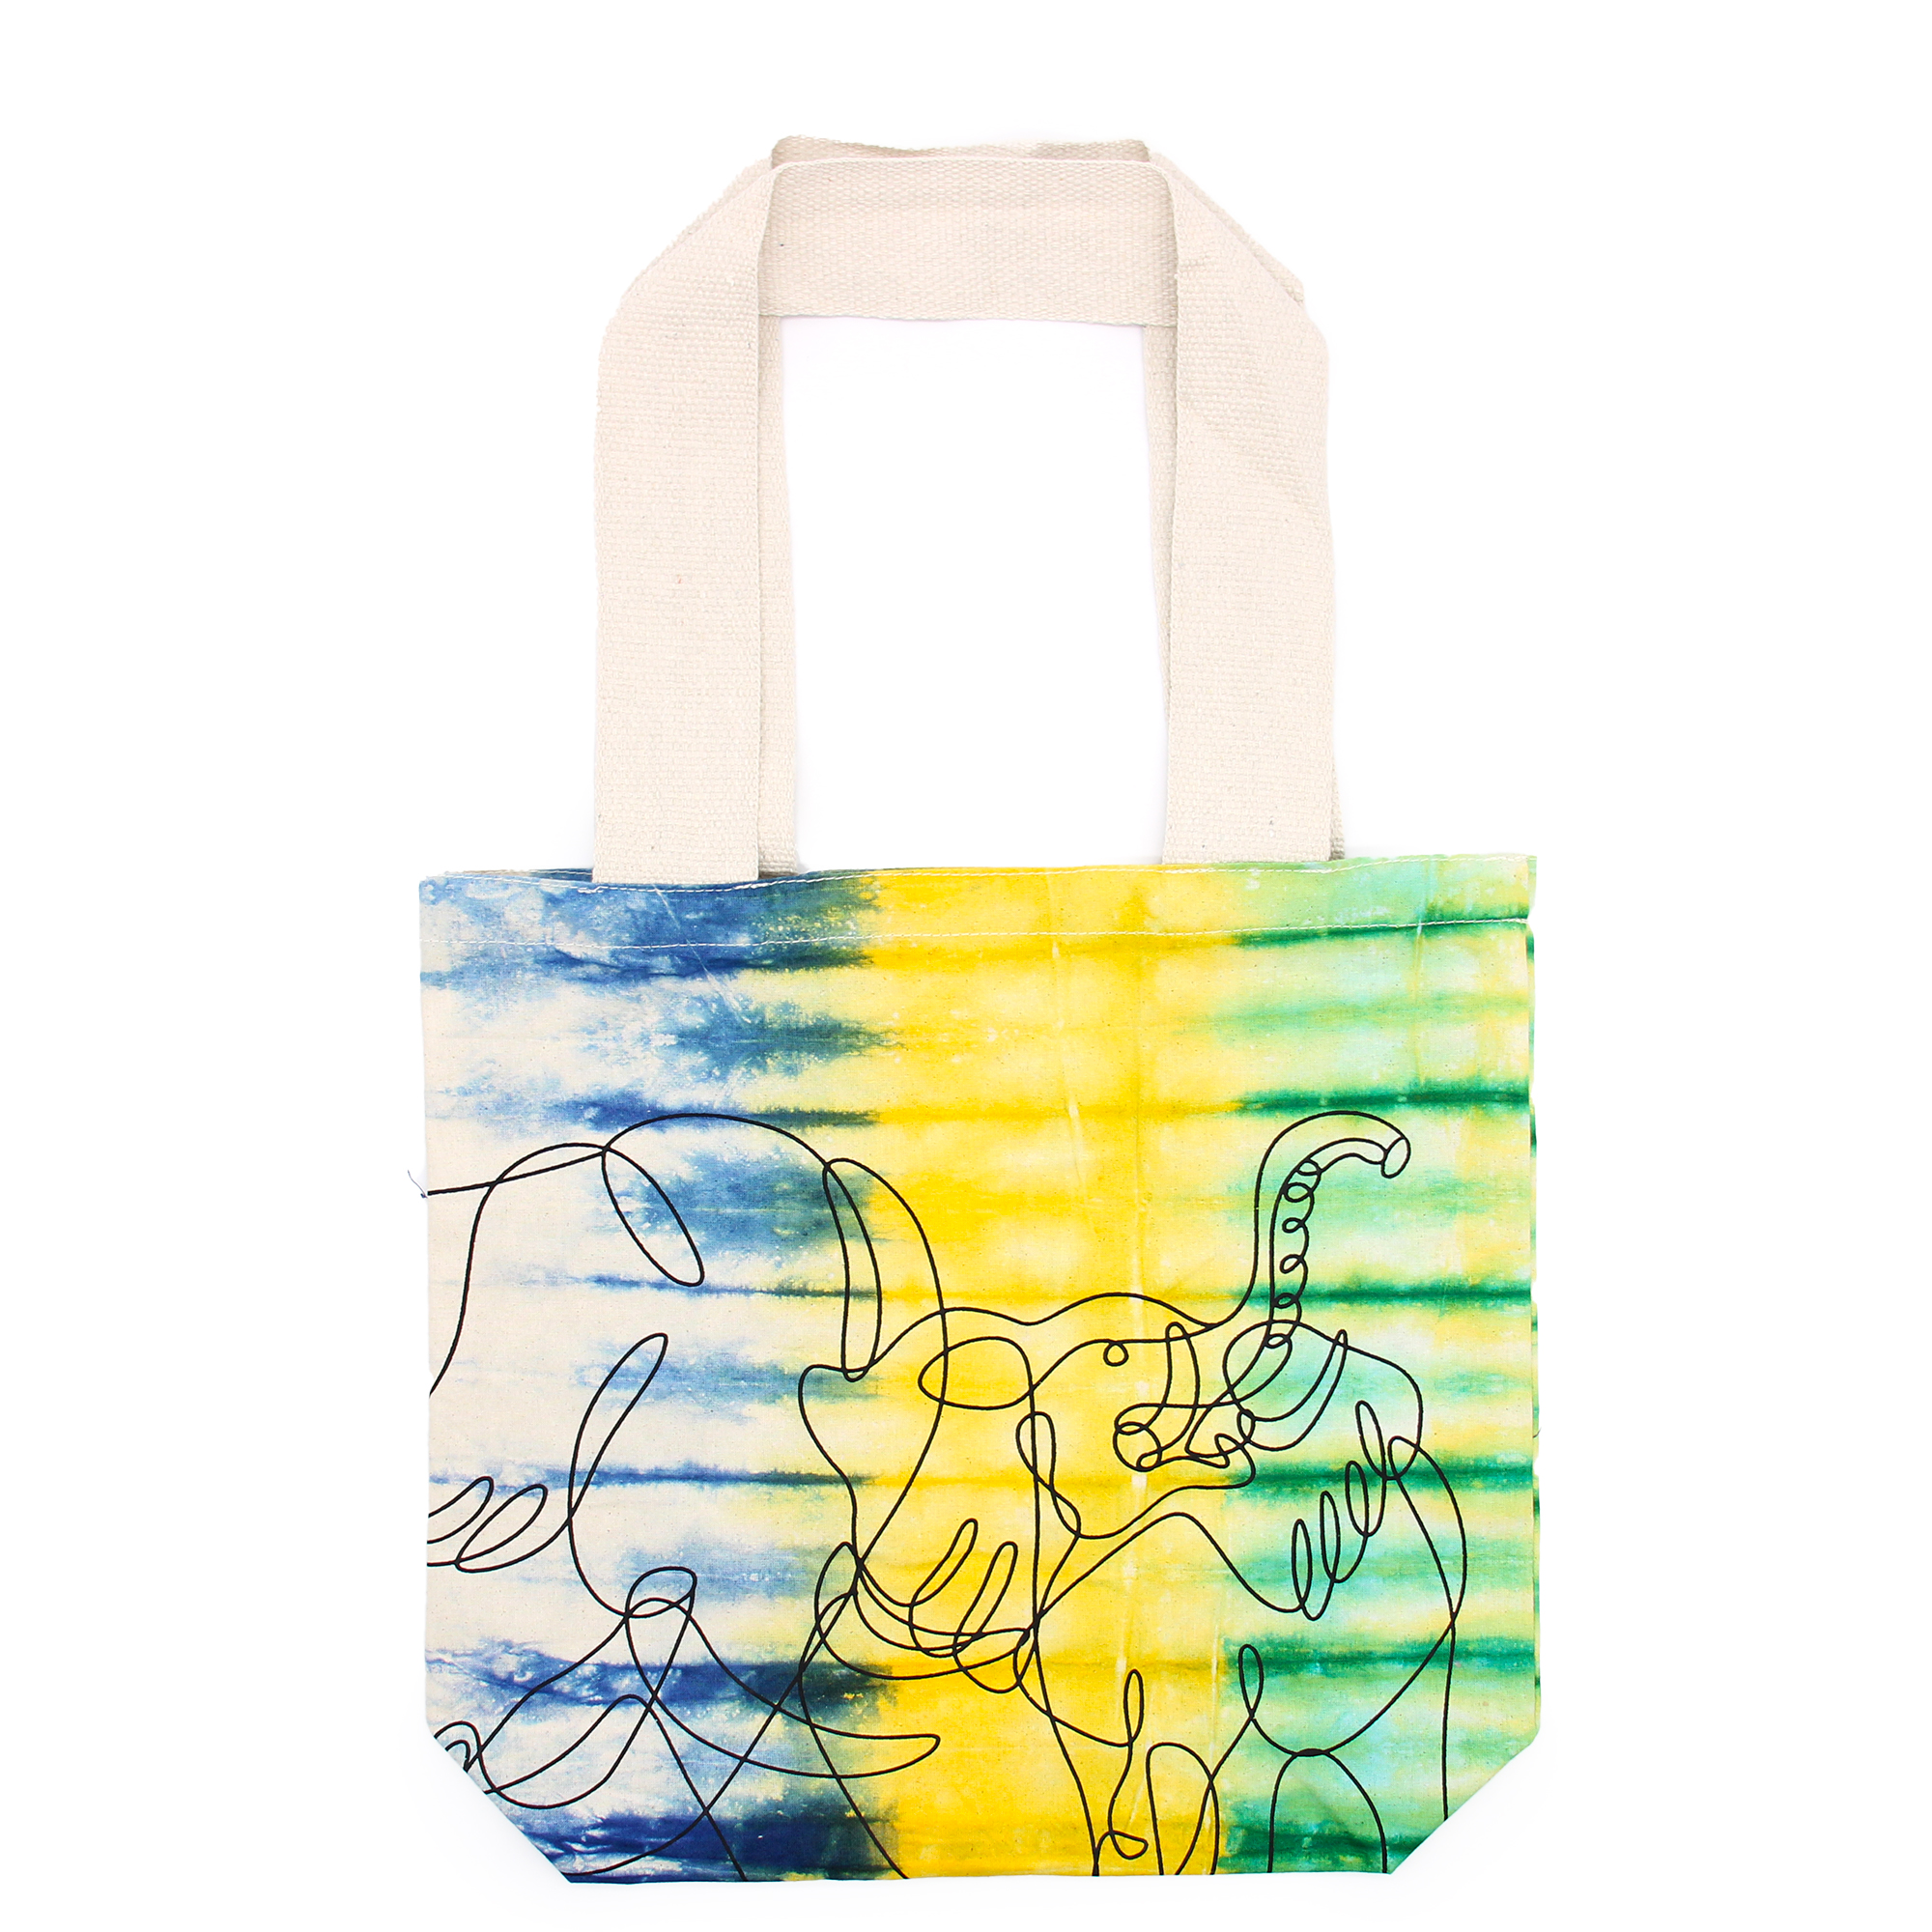 Tye-Dye Cotton Bag (6oz) - 38x42x12cm - Elephants - Multi - Natural Handle